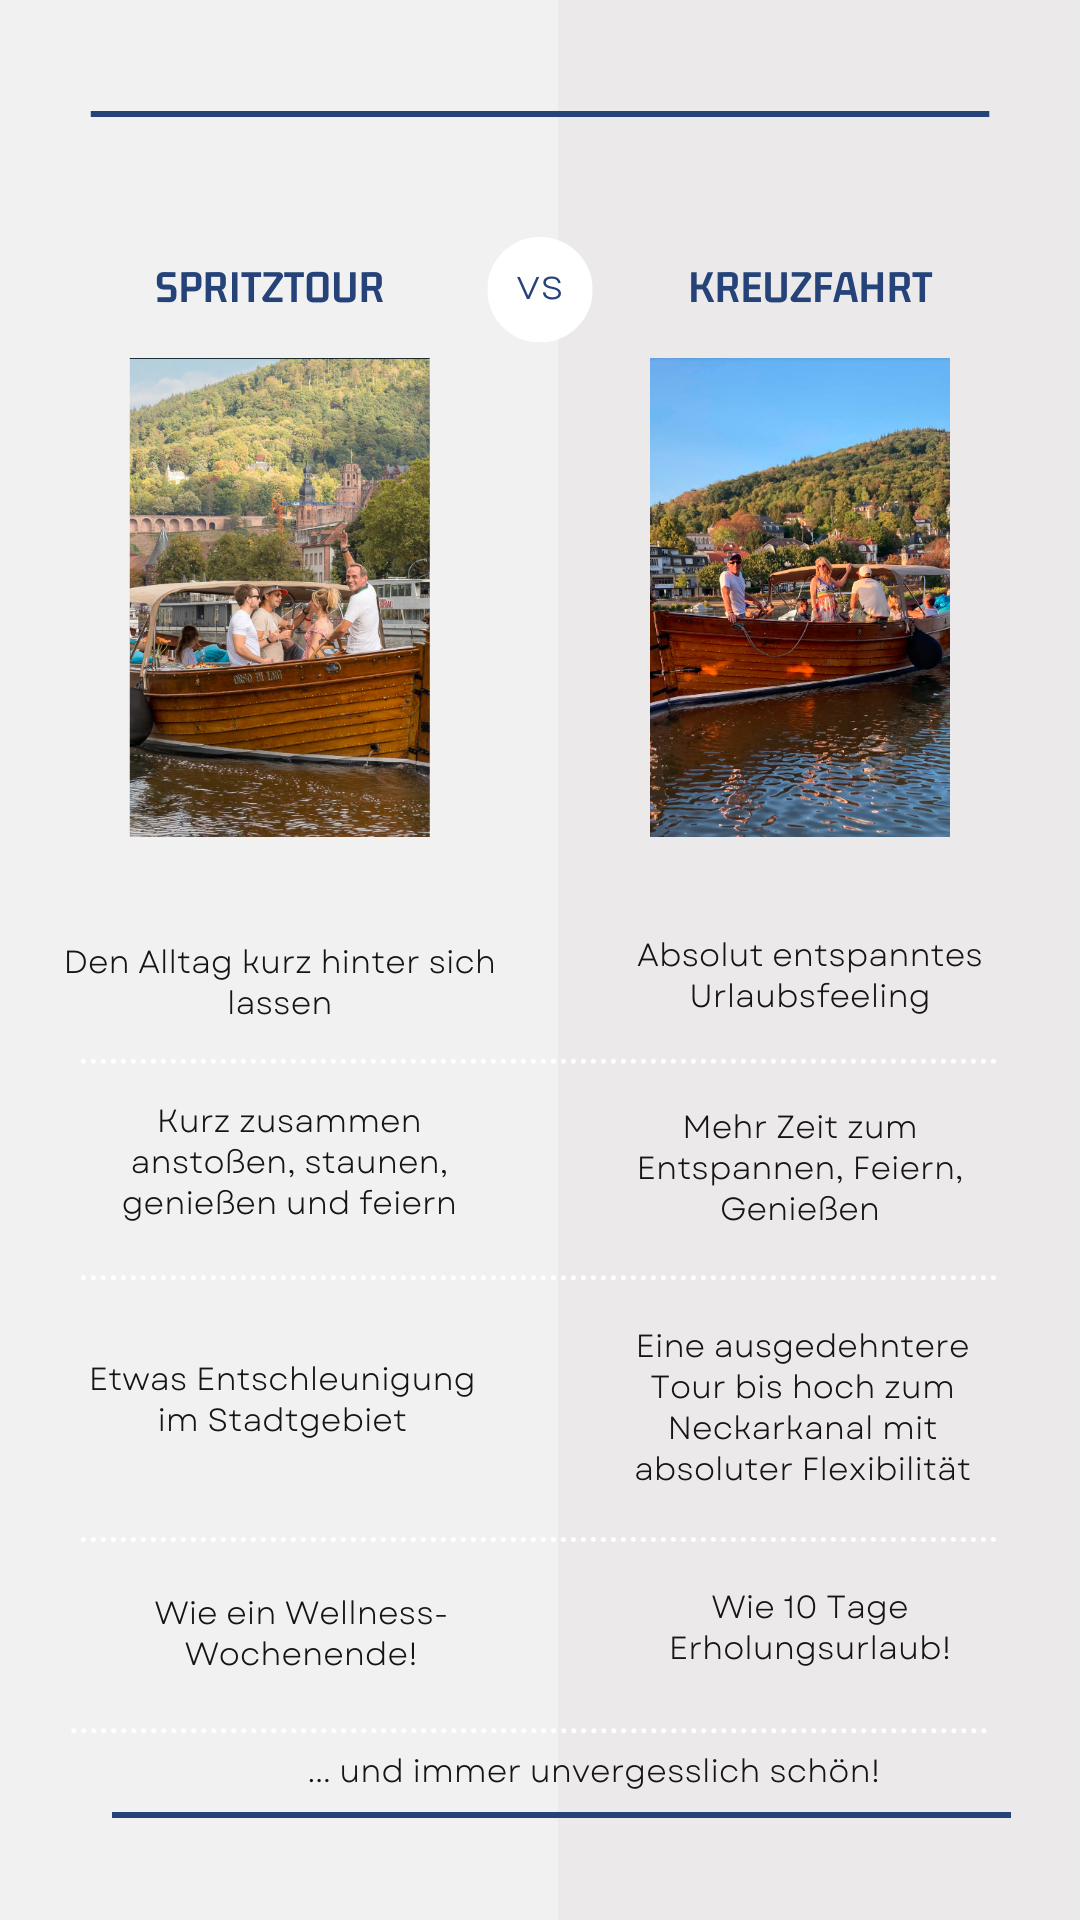 Die Bootsfahrten von Riverboat im Vergleich für eine Auszeit in Heidelberg